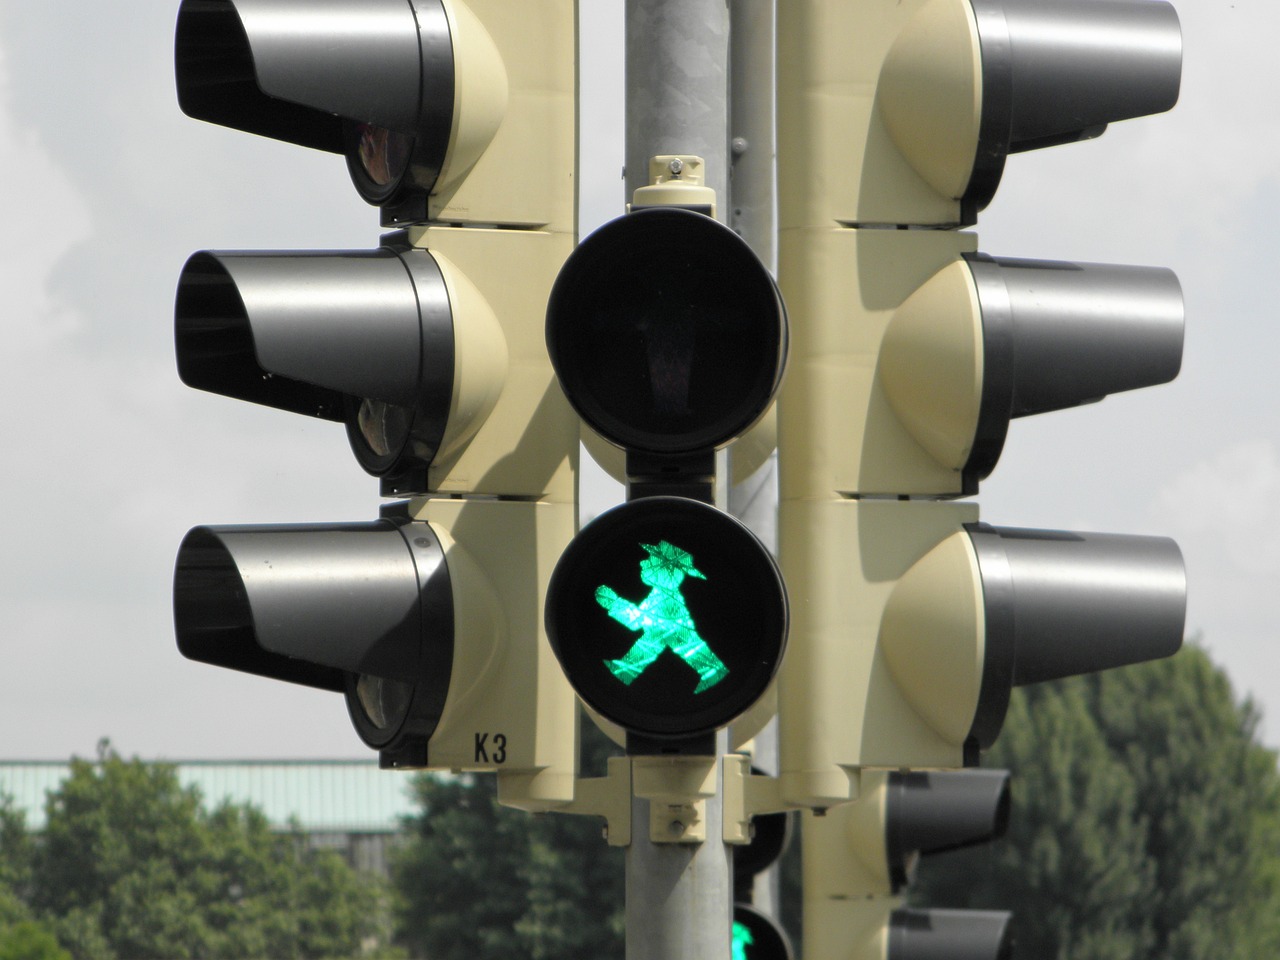 sygnalizator zielone światło